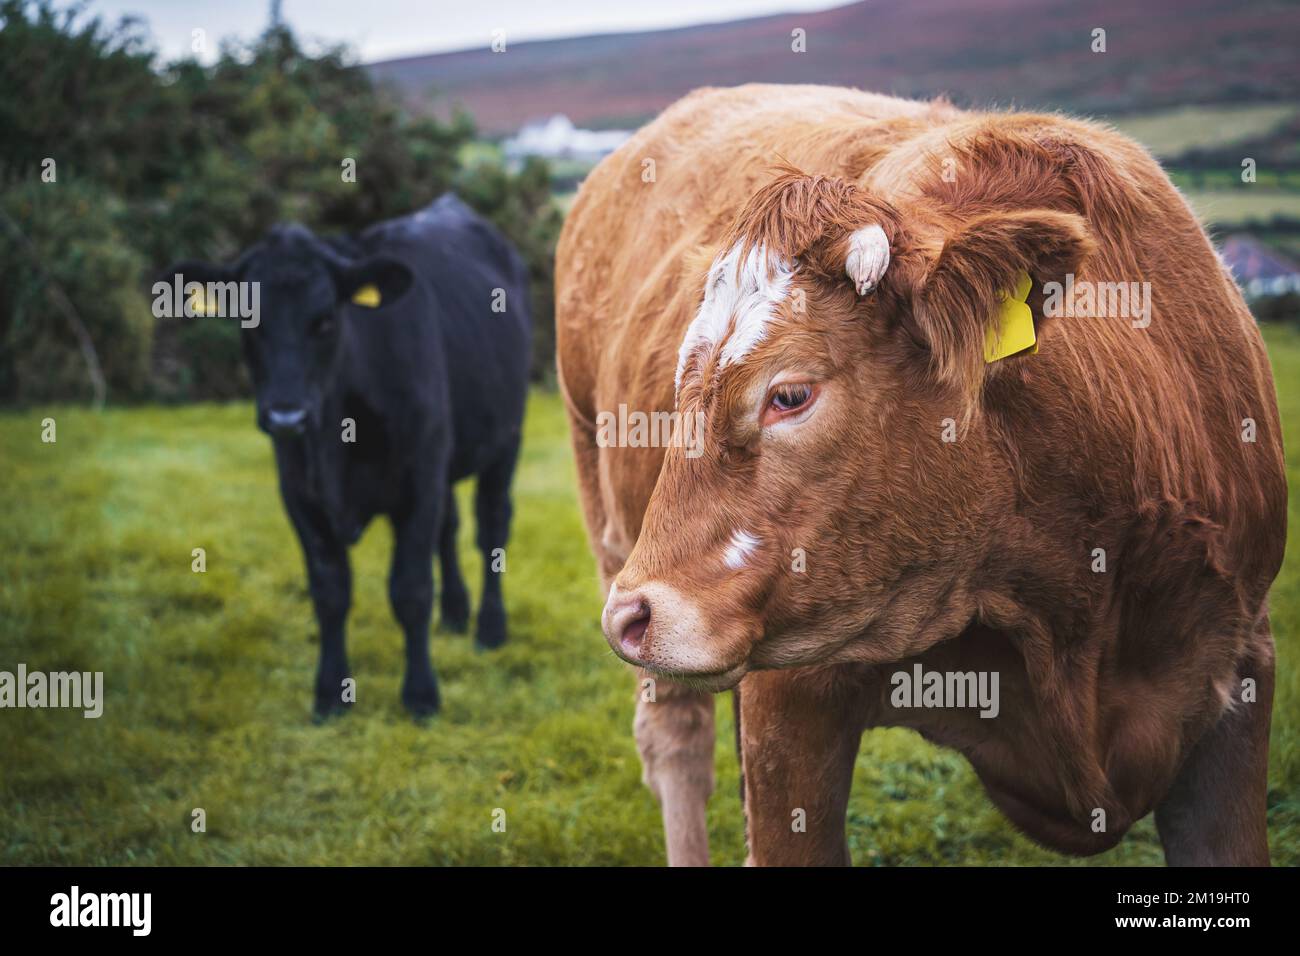 La vaca parda de Limousin, la raza francesa de ganado vacuno y la vaca negra en el fondo. Foto de stock